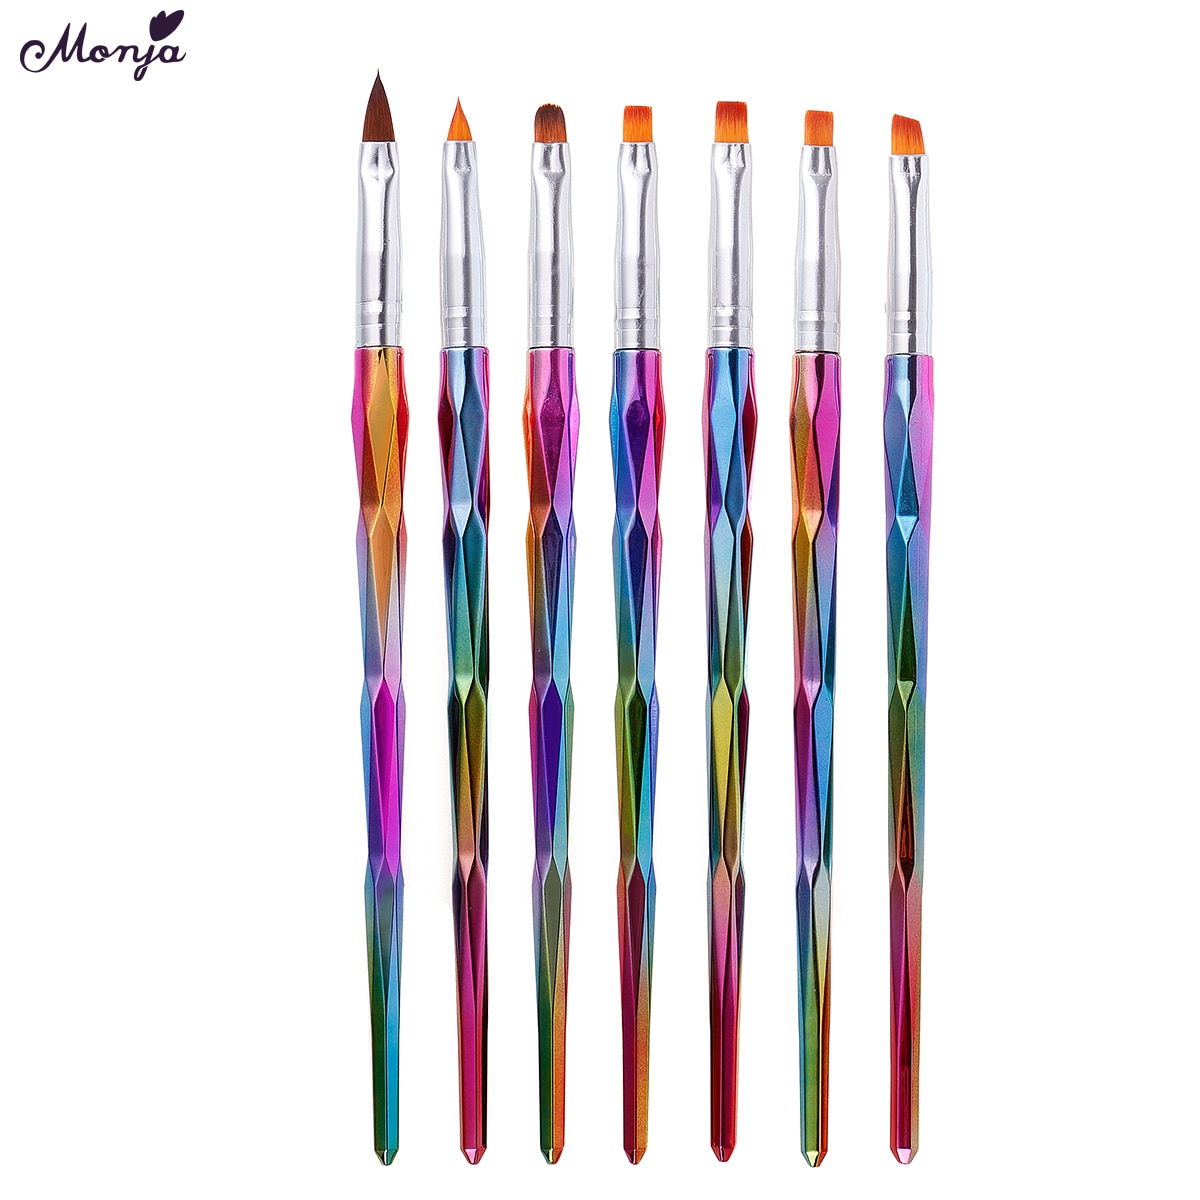 Monja 7 Stks/set Kleurrijke Handvat Nail Art Brush Kit Bloem Patroon Schilderen Acryl Uv Gel Extension Builder Tekening Pen